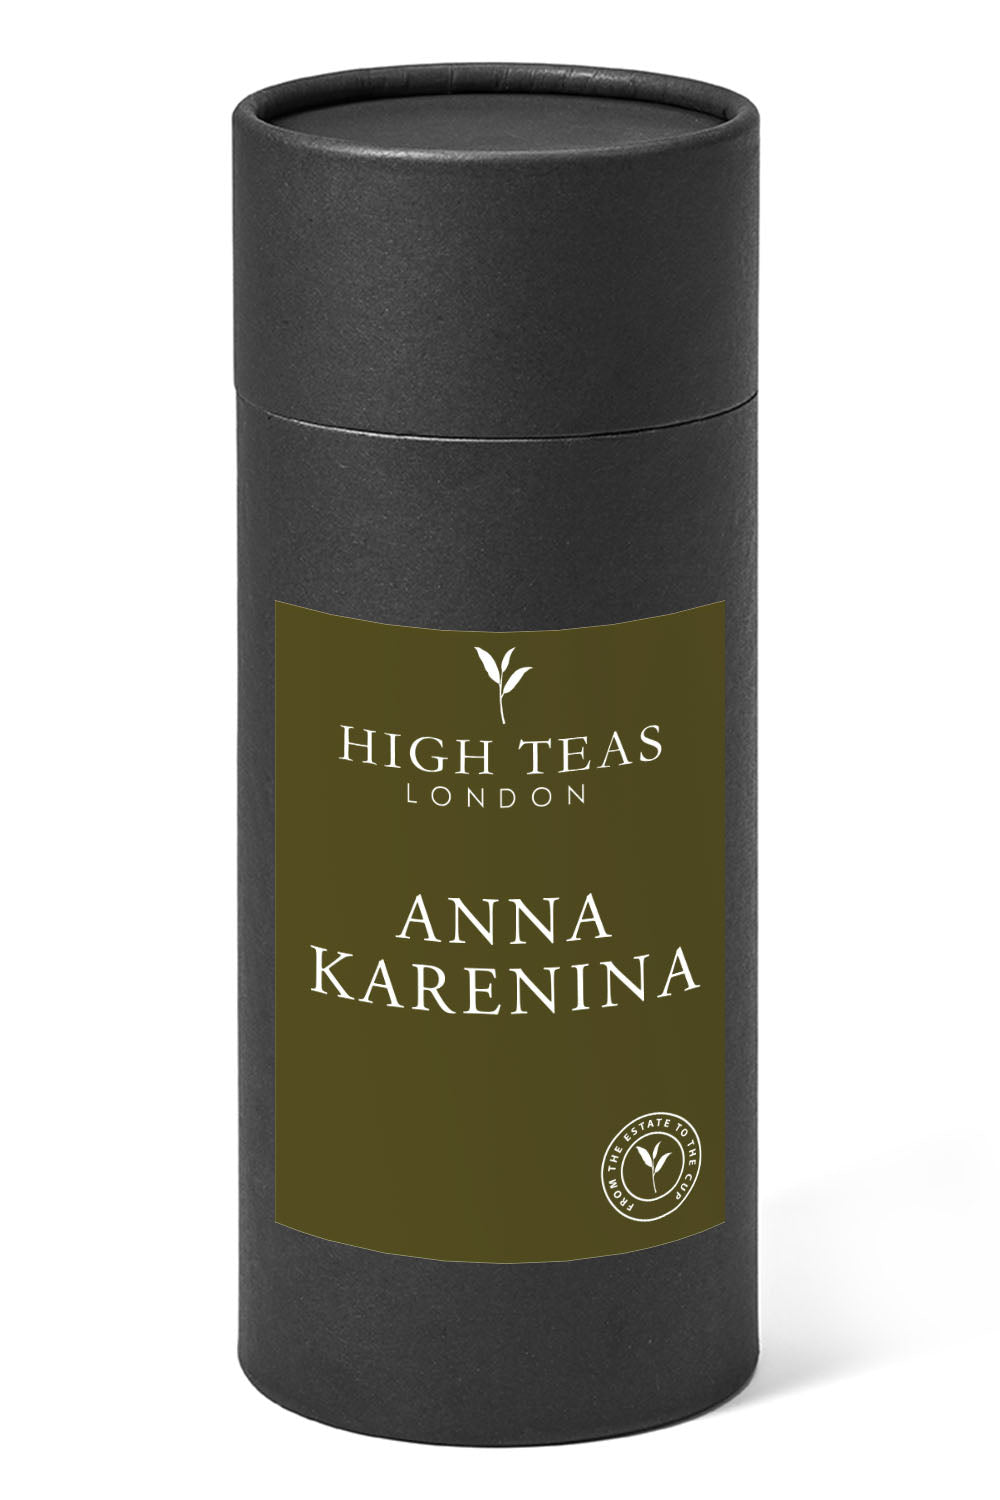 Anna Karenina Blend aka Smoky Rose-150g gift-Loose Leaf Tea-High Teas